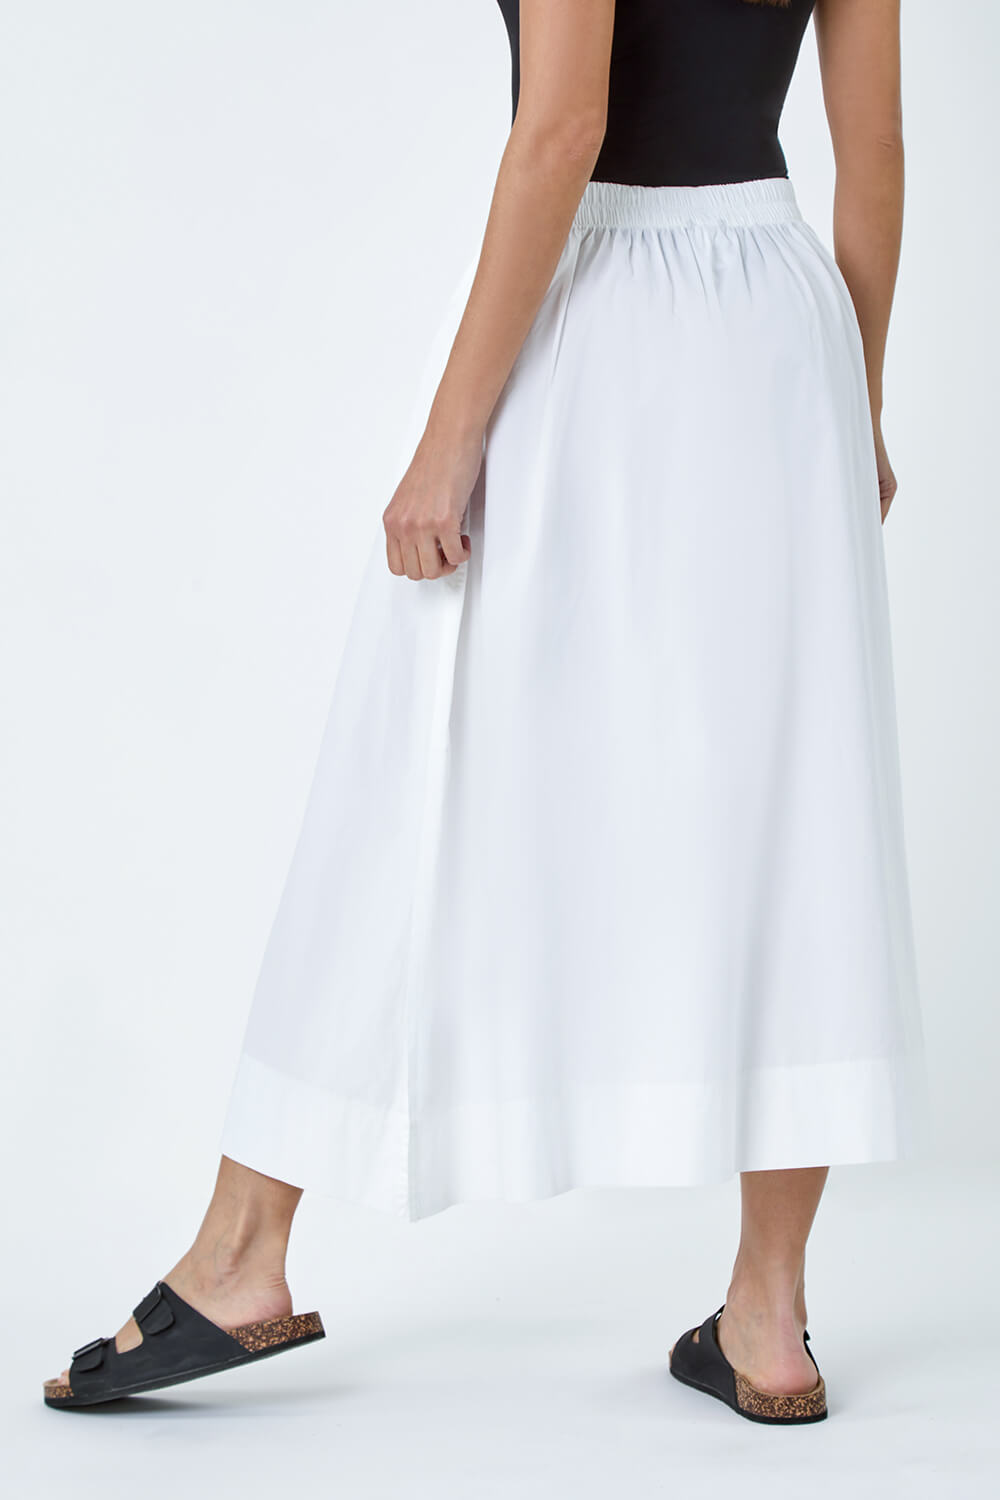 White Cotton Poplin Pocket Skirt, Image 3 of 5